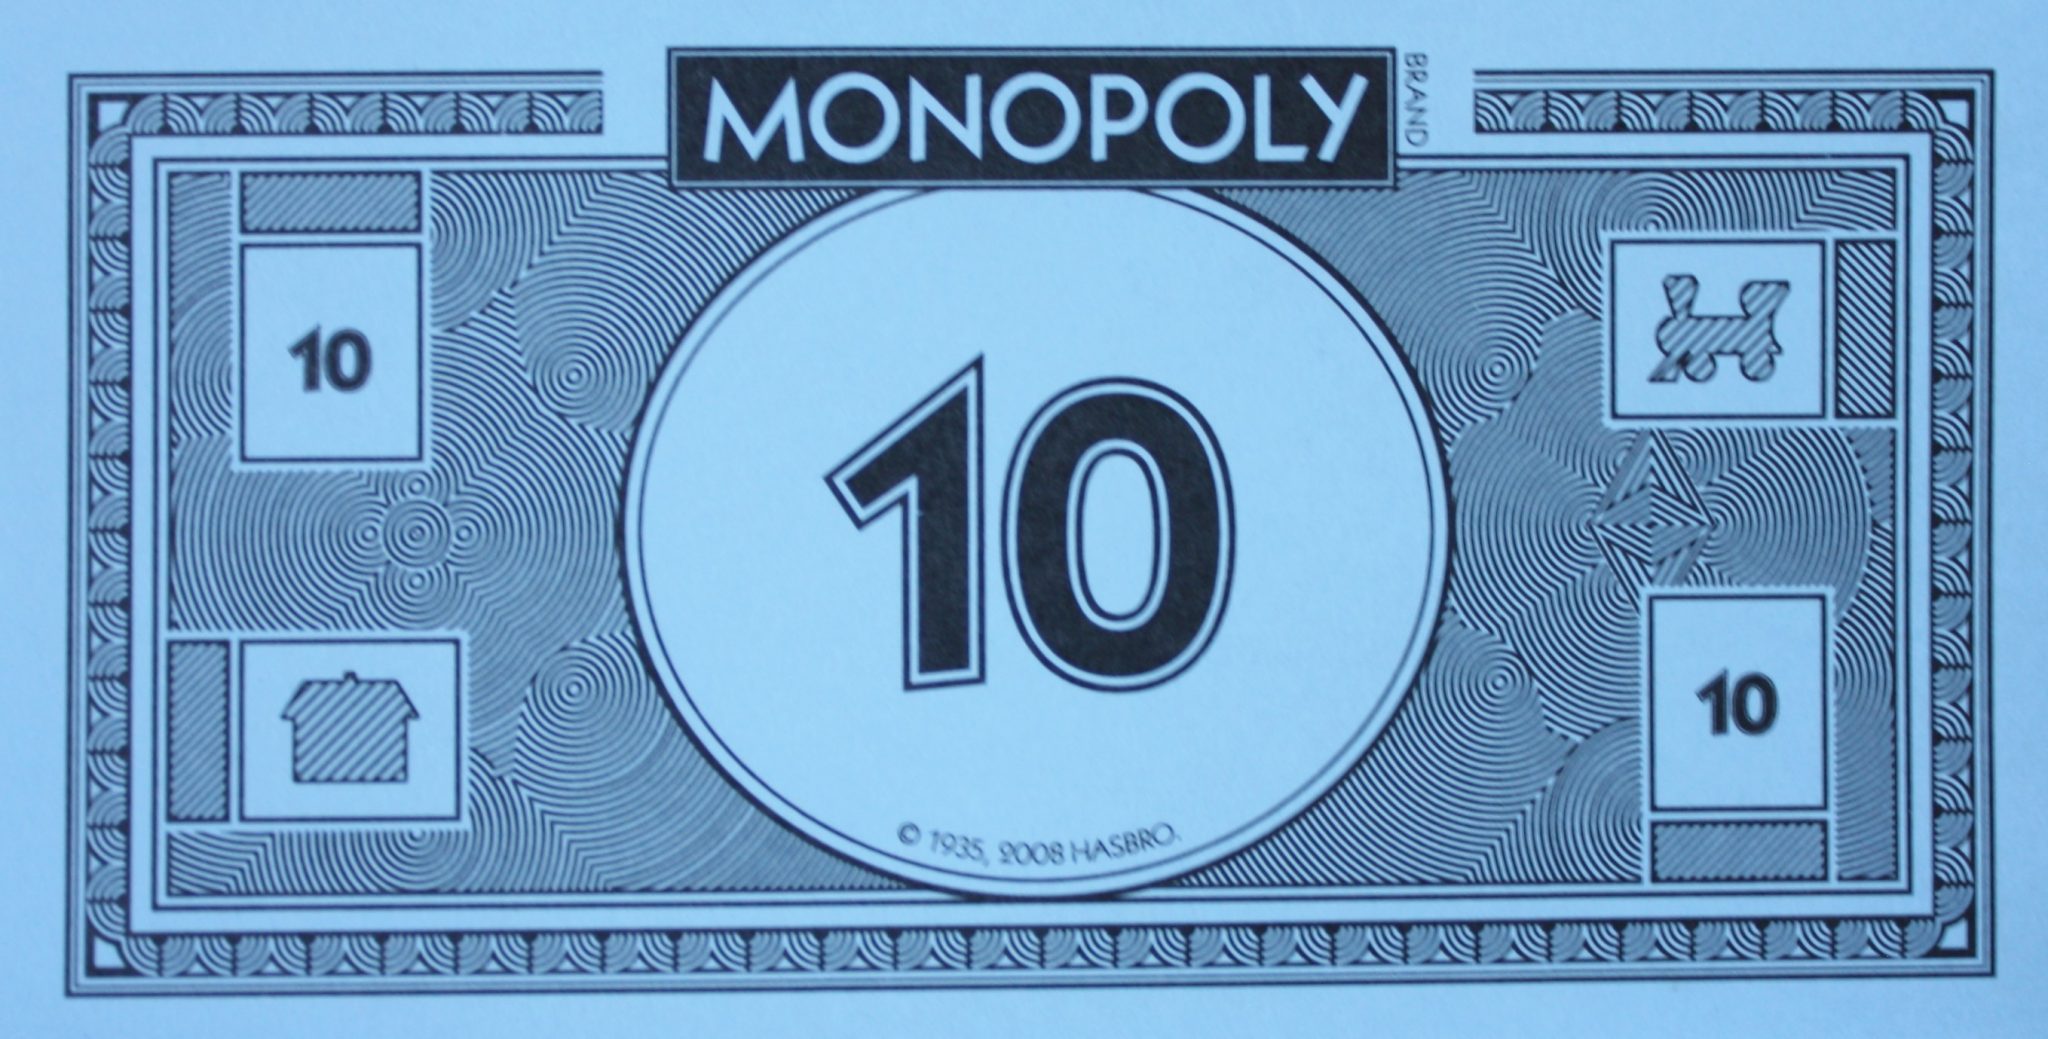 monopoly game money